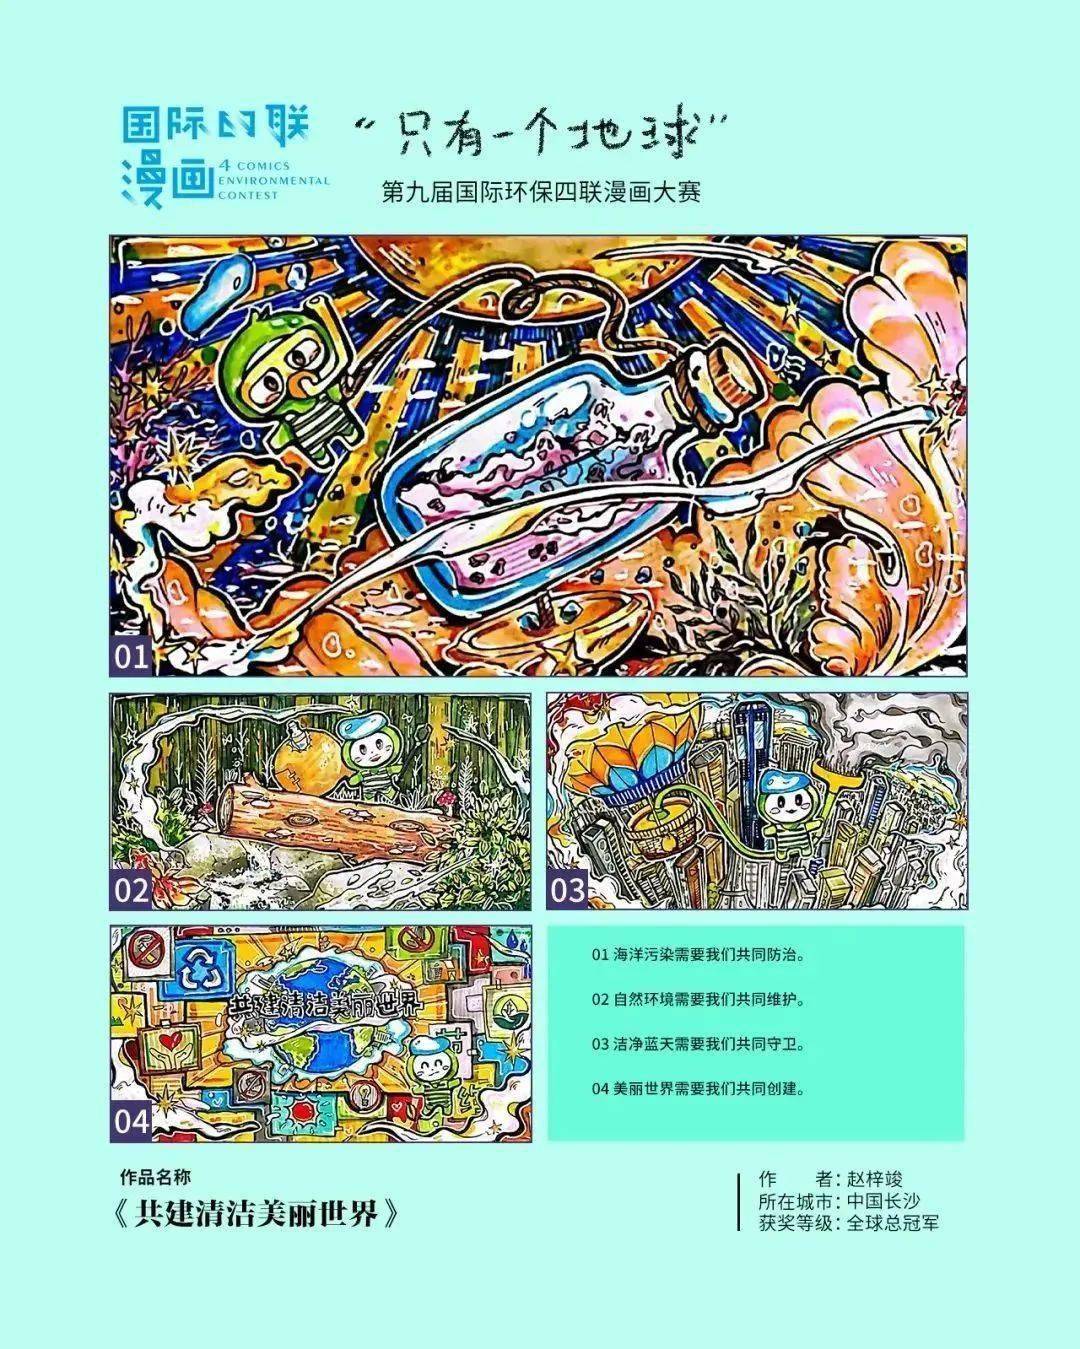 长沙学子斩获第九届国际环保四联漫画大赛全球总冠军